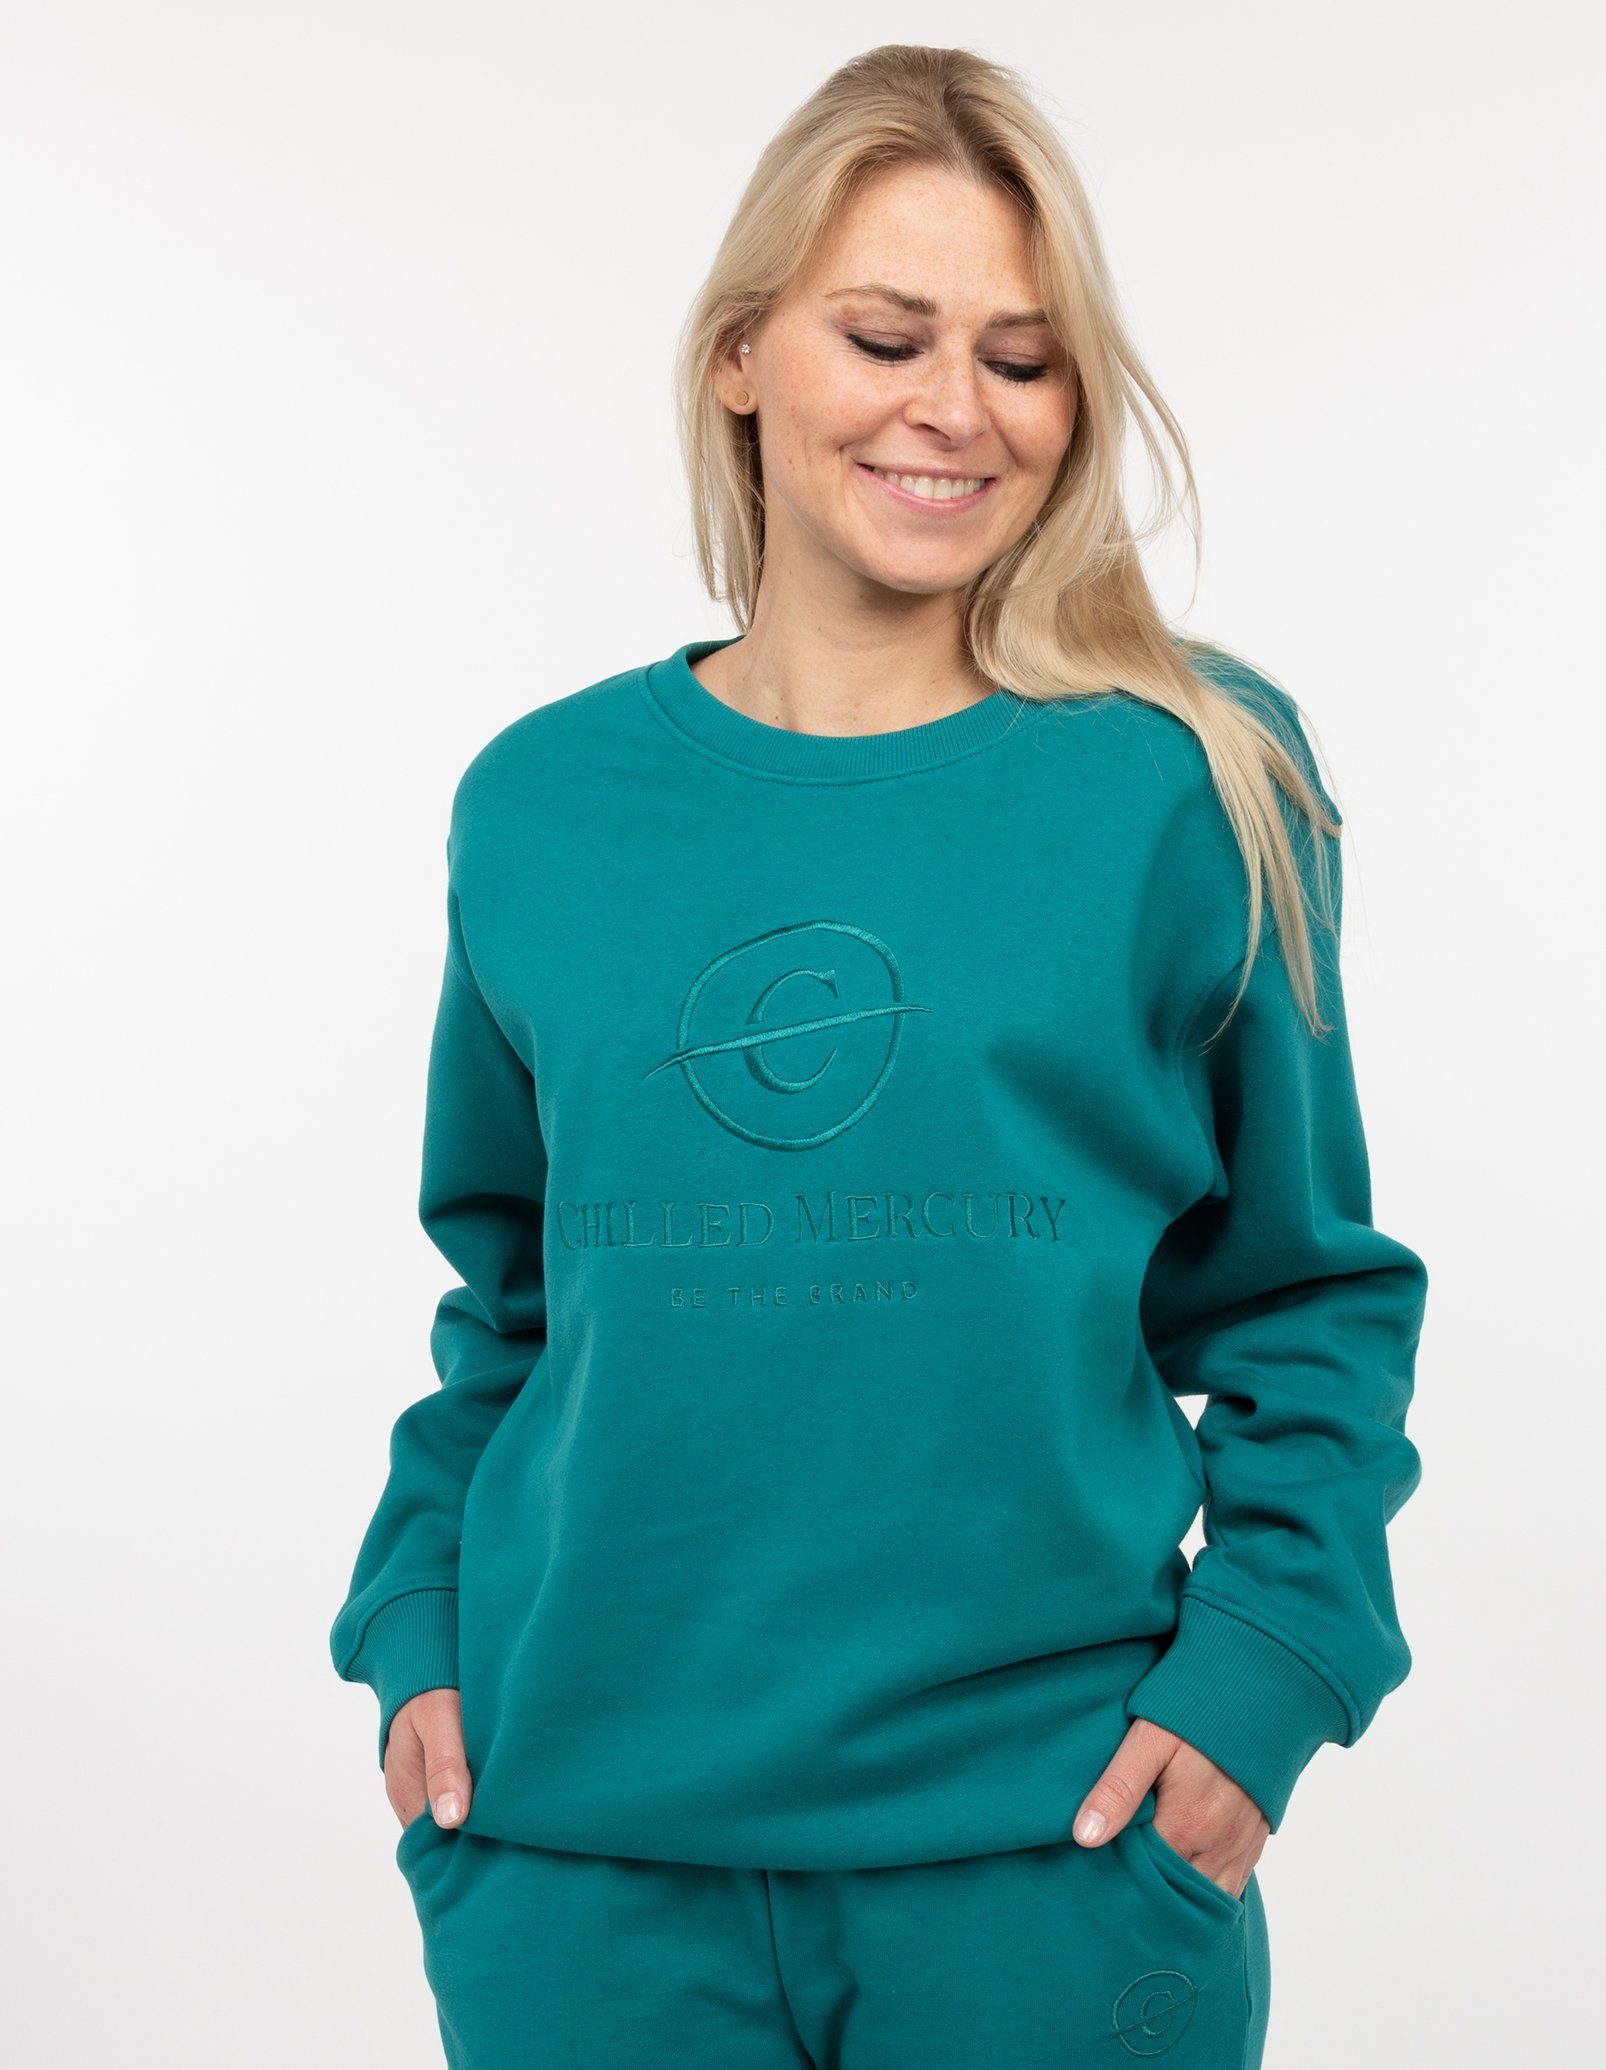 Damen Chilled Grün / Sweatshirt Pullover Mercury